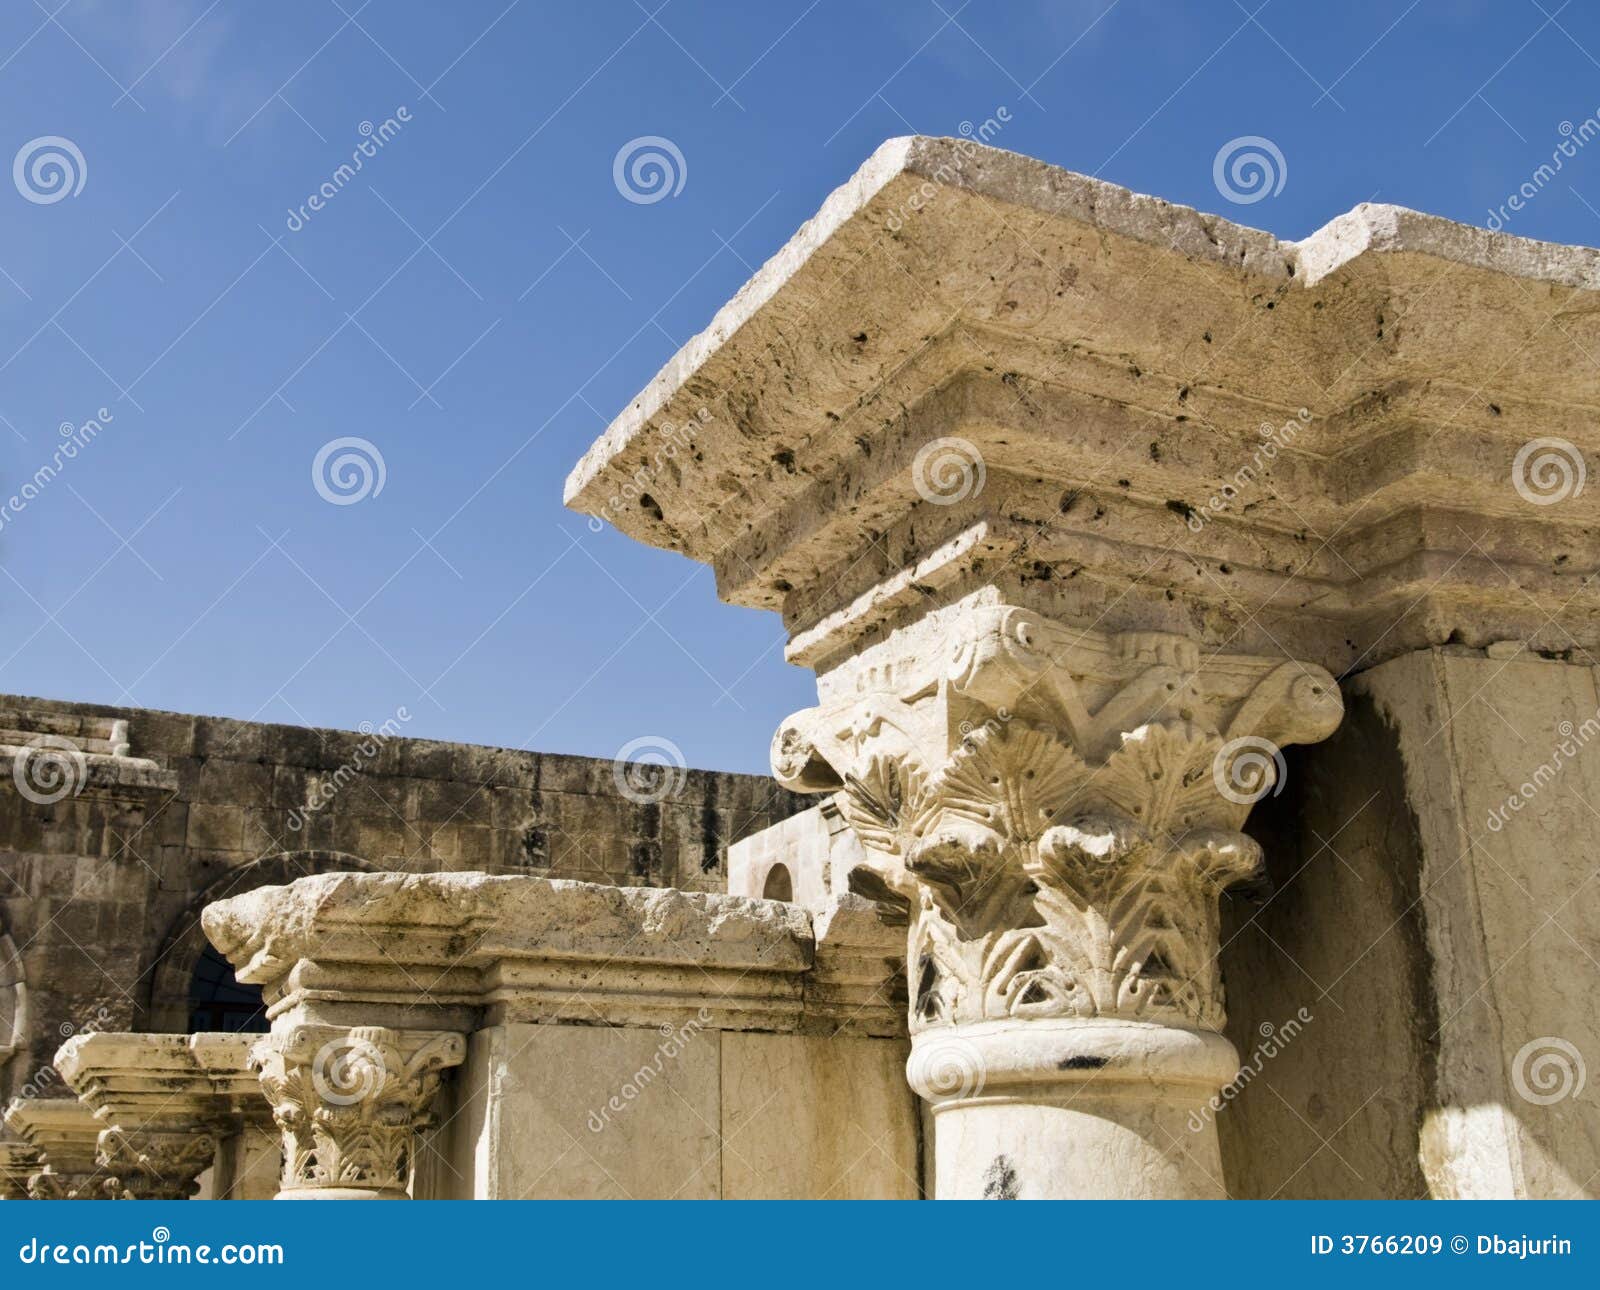 Detalhe do amphitheater romano,. Detalhe do estágio romano do amphitheater em Amman, local do al-Qasr, Jordão